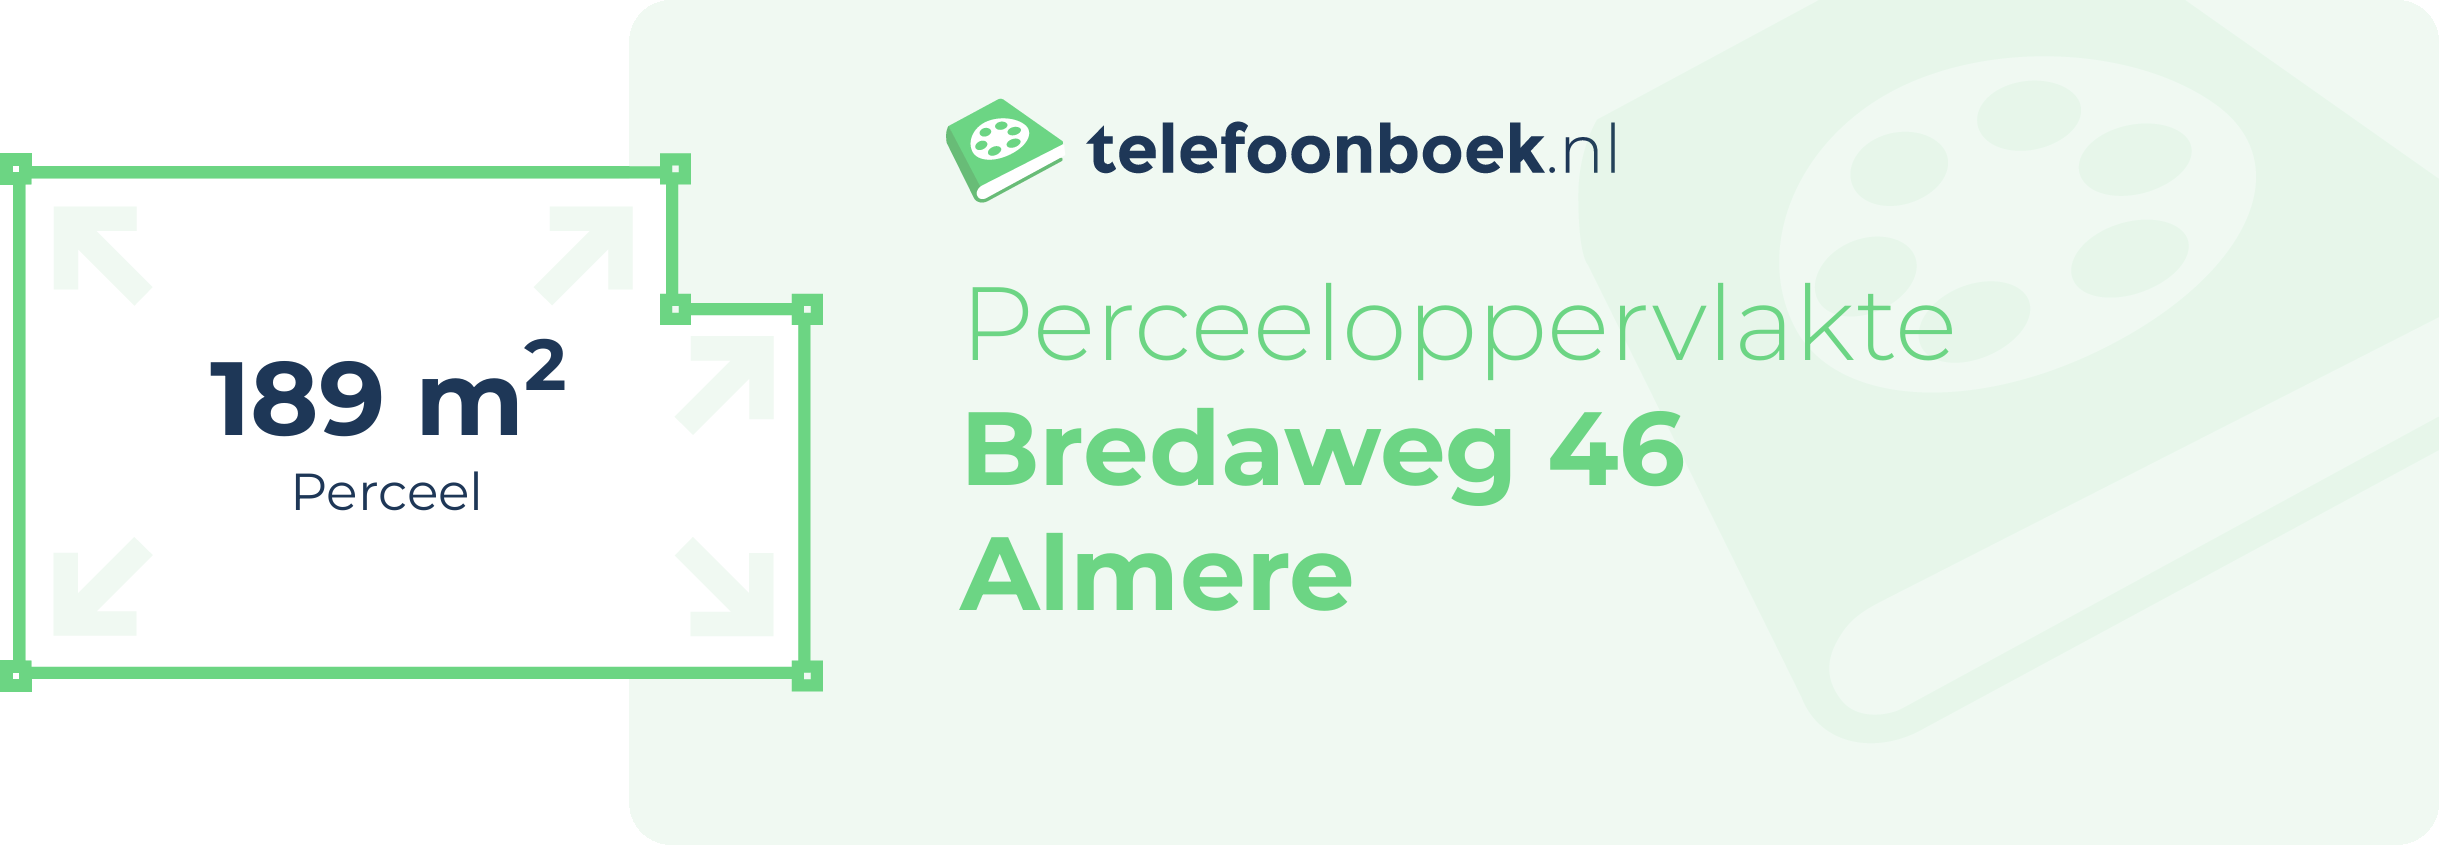 Perceeloppervlakte Bredaweg 46 Almere